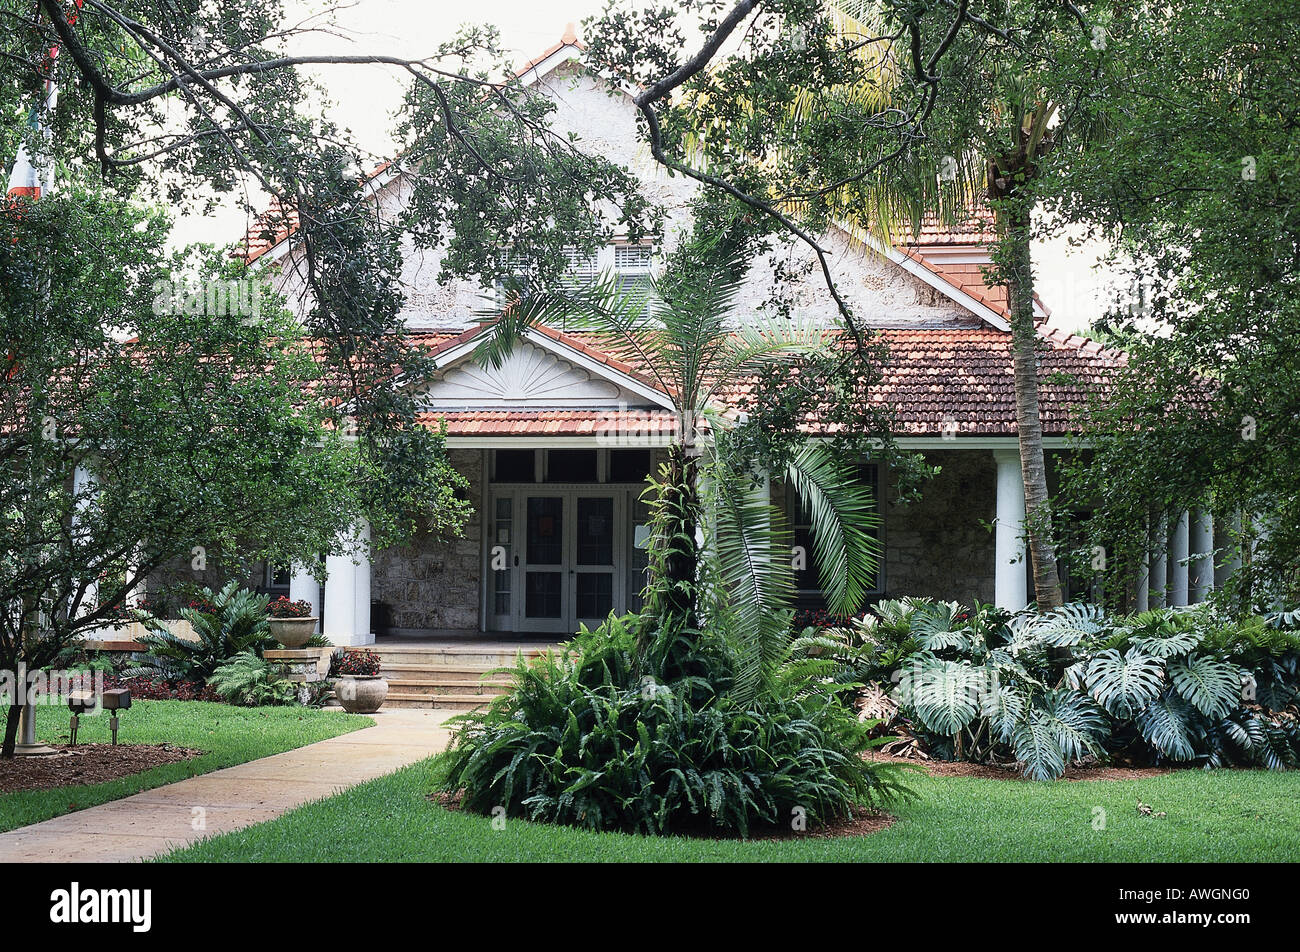 USA, Florida, Miami, historischen Coral Gables, Merrick Haus, Fassade, teilweise durch Vegetation und Bäume verdeckt Stockfoto